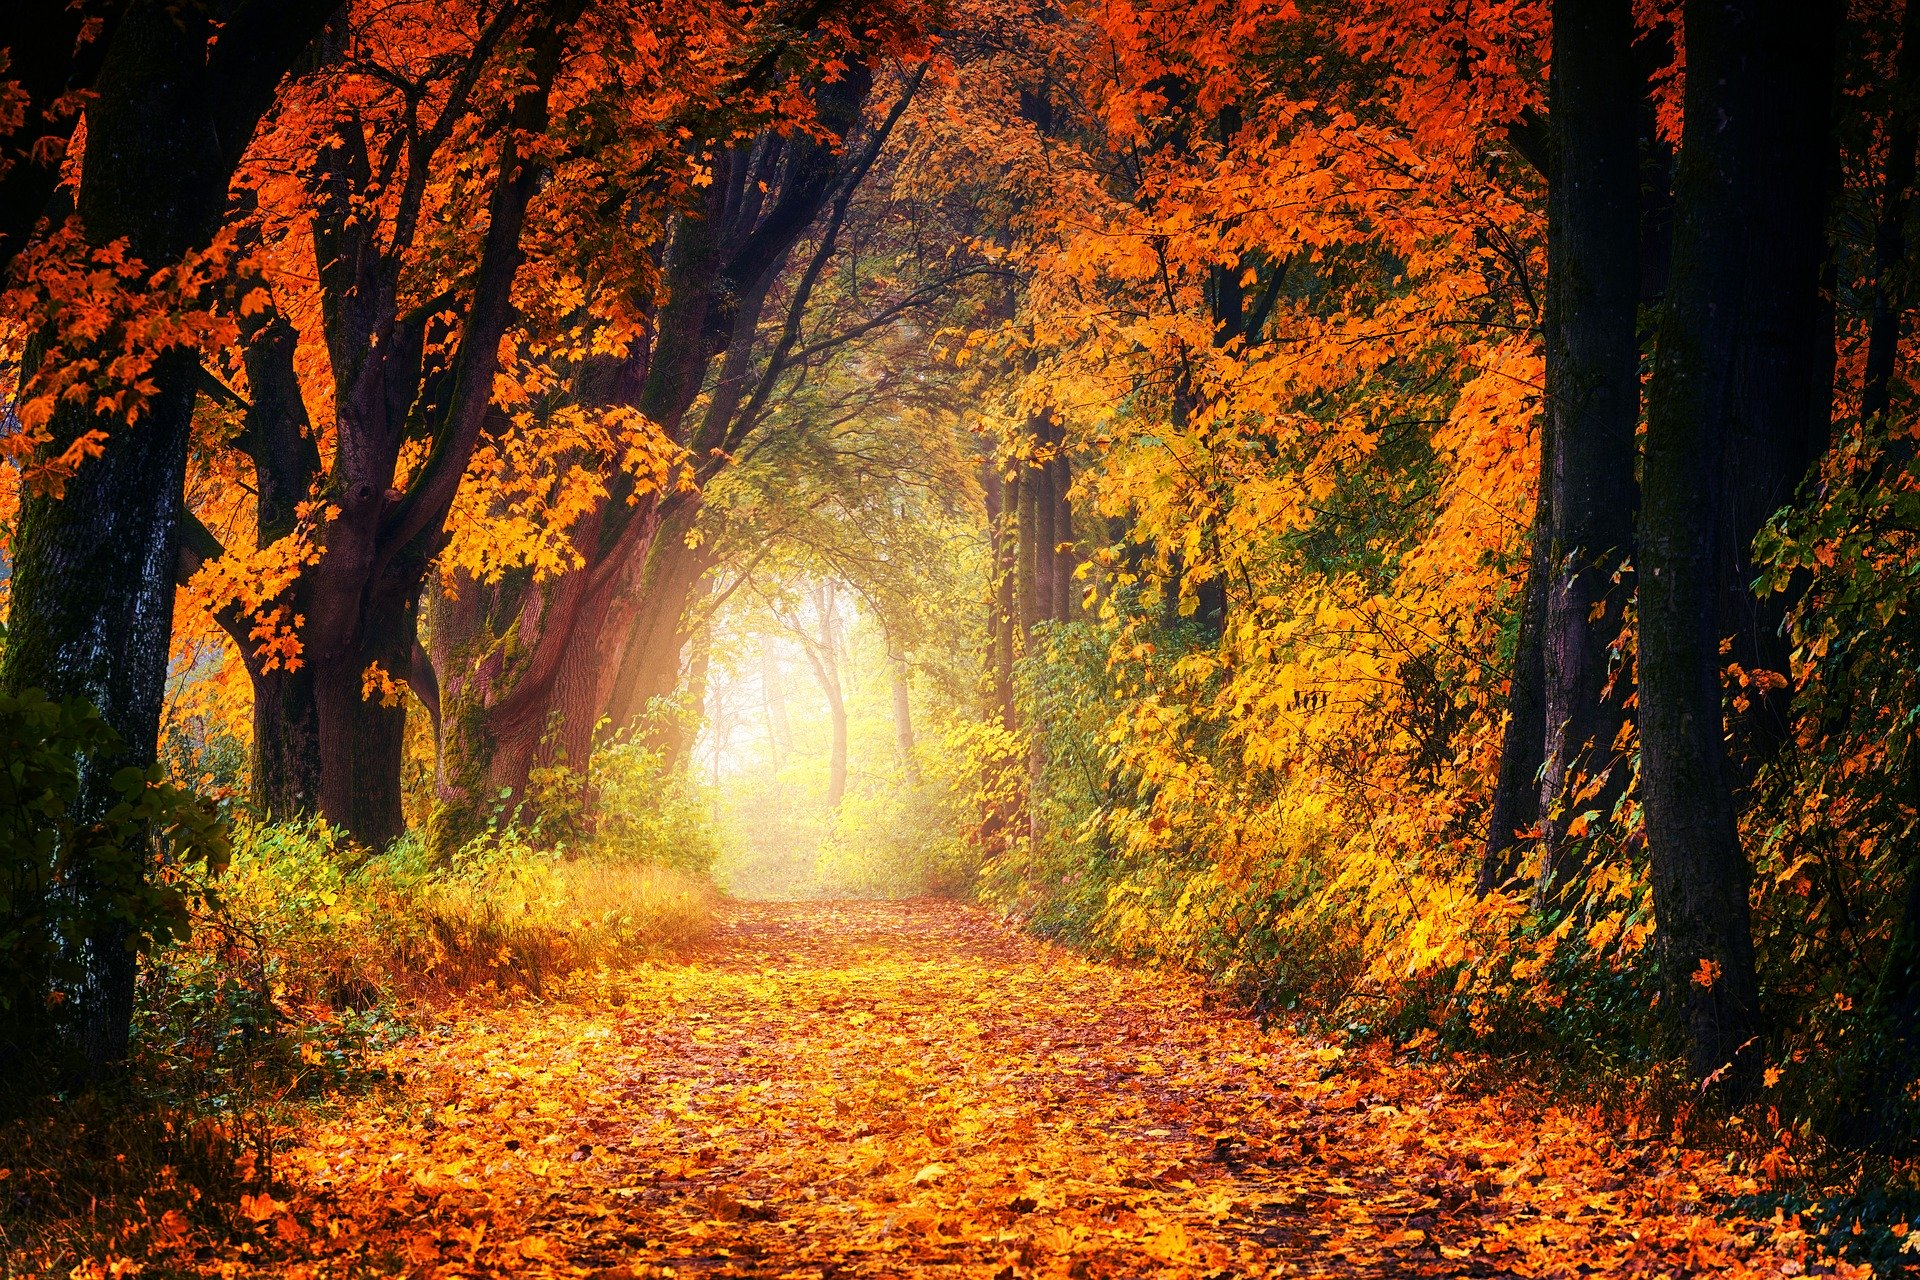 Waldweg (c) Bild von Johannes Plenio auf Pixabay